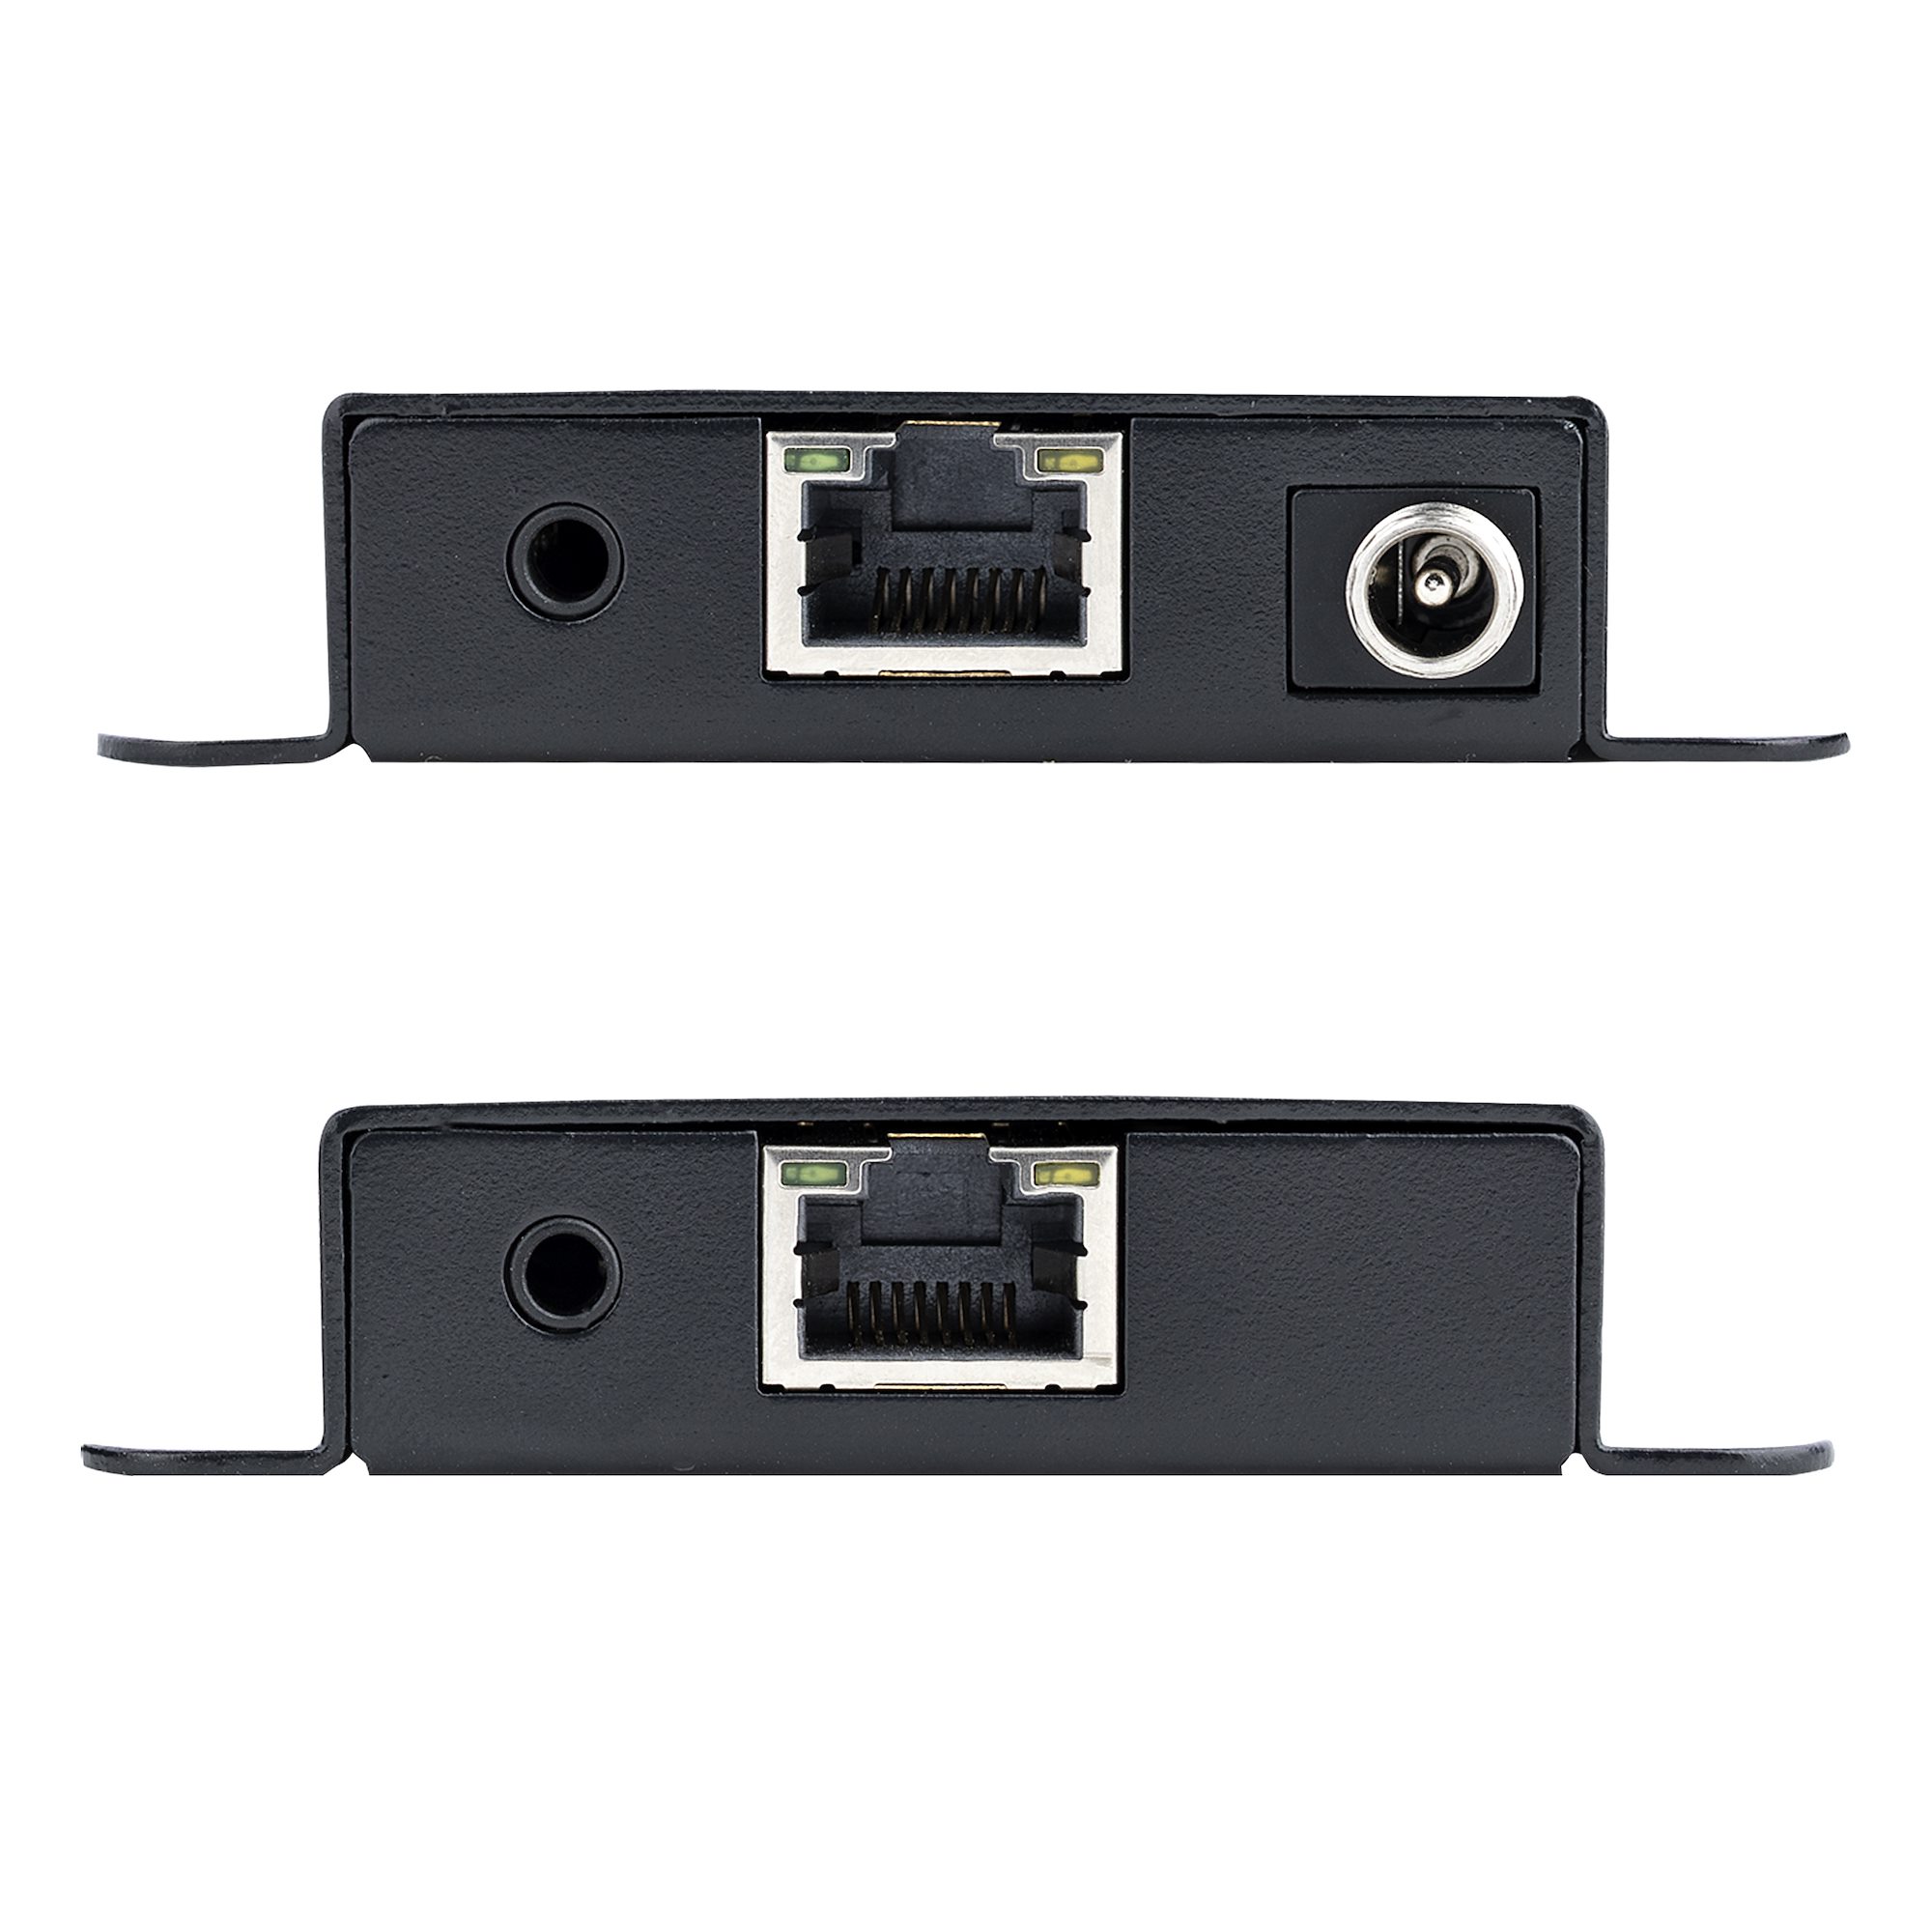  Sonku Paquete de 5 adaptadores extensores HDMI macho a hembra,  convertidor HDMI a HDMI de ángulo ascendente de 90 y 270 grados, conector HDMI  hembra a HDMI hembra, extensor y adaptador